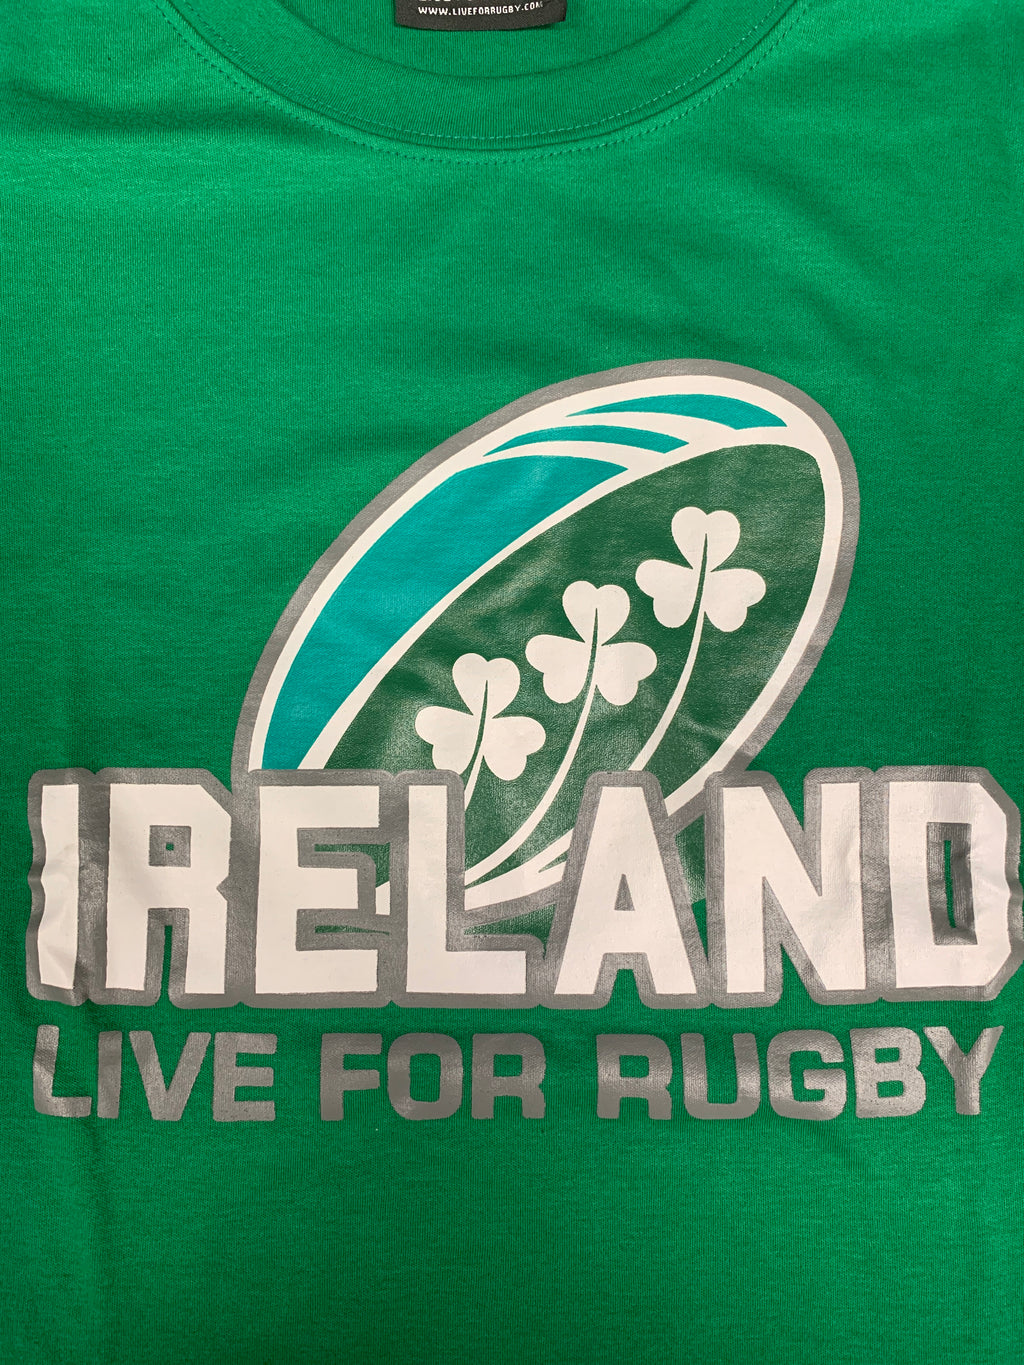 Rugby Ireland Premium Tee-Shirt